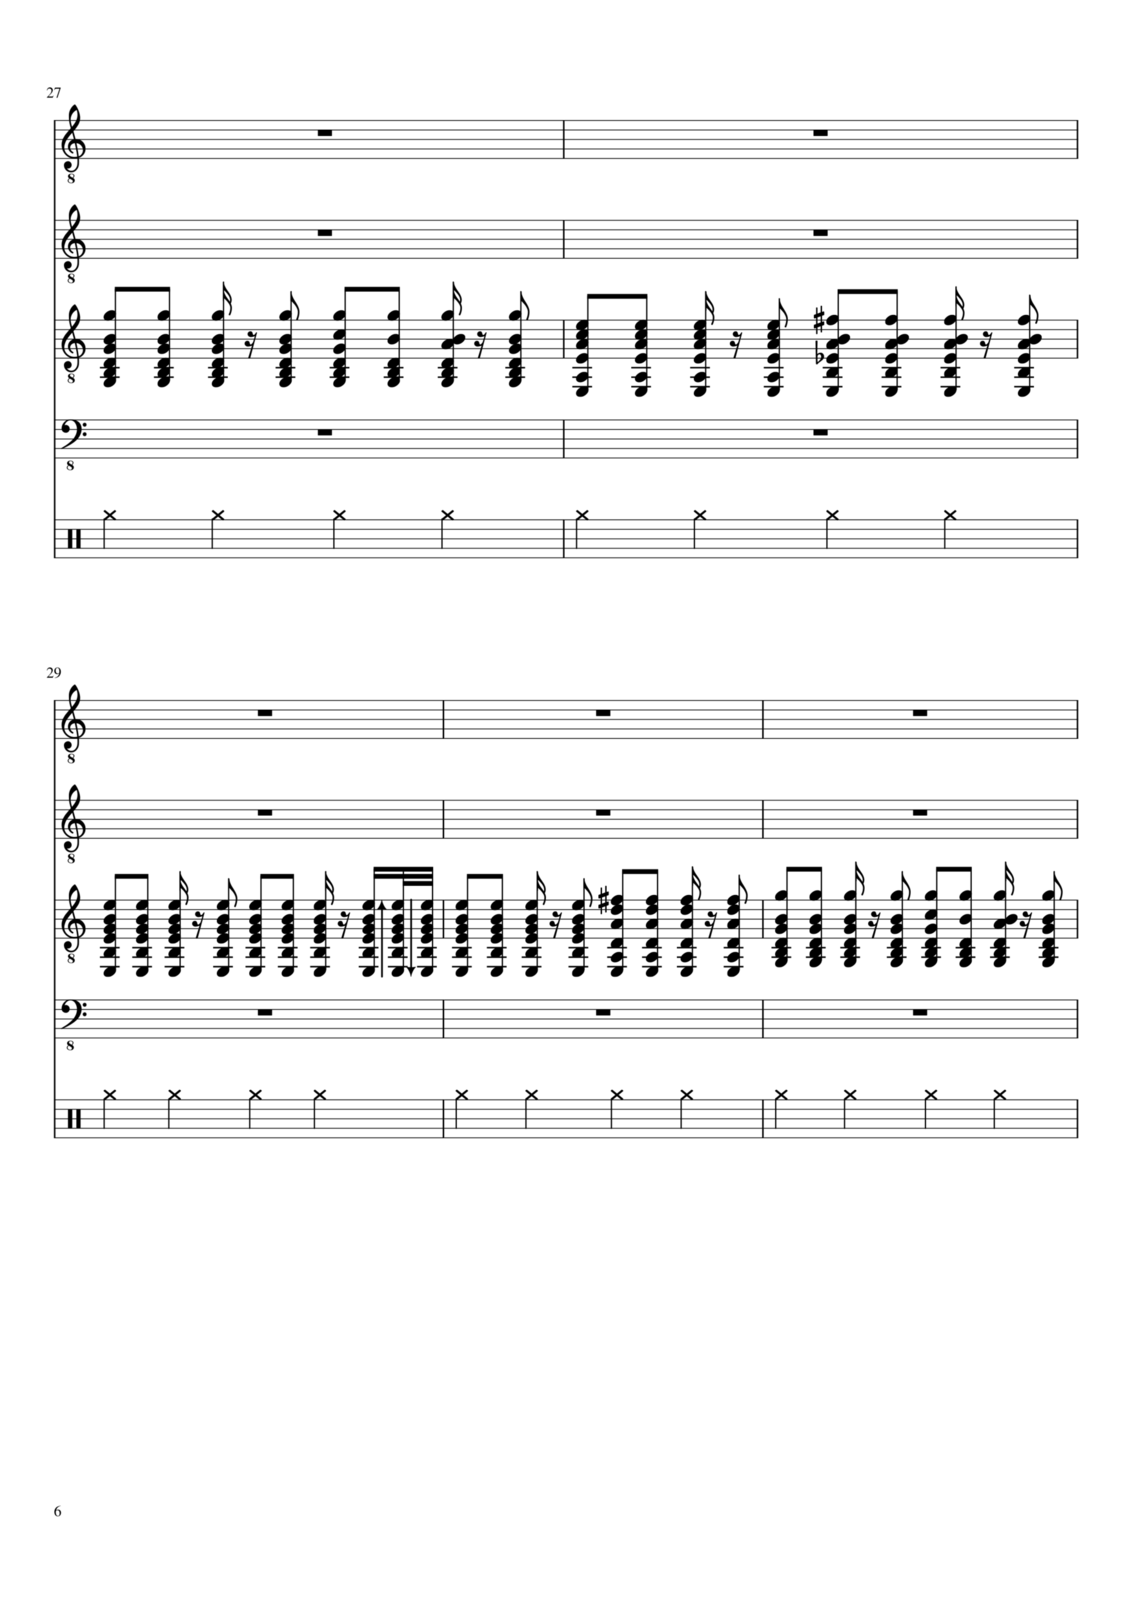 Vechnaya molodost slide, Image 6